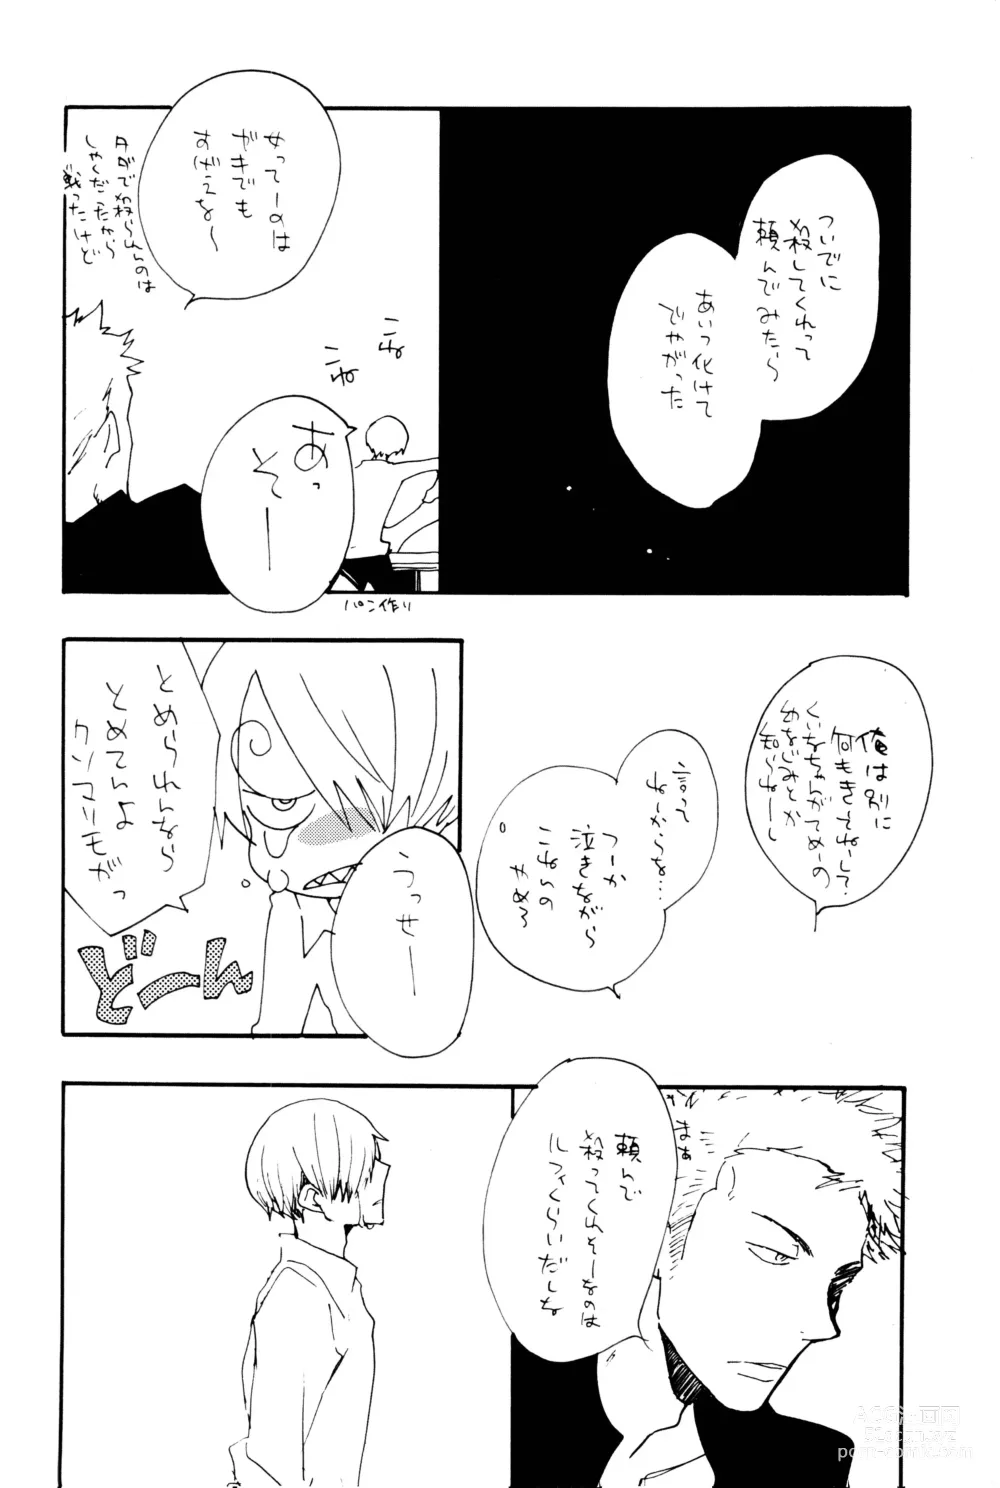 Page 53 of doujinshi 0-do kara Machibito Kitaru